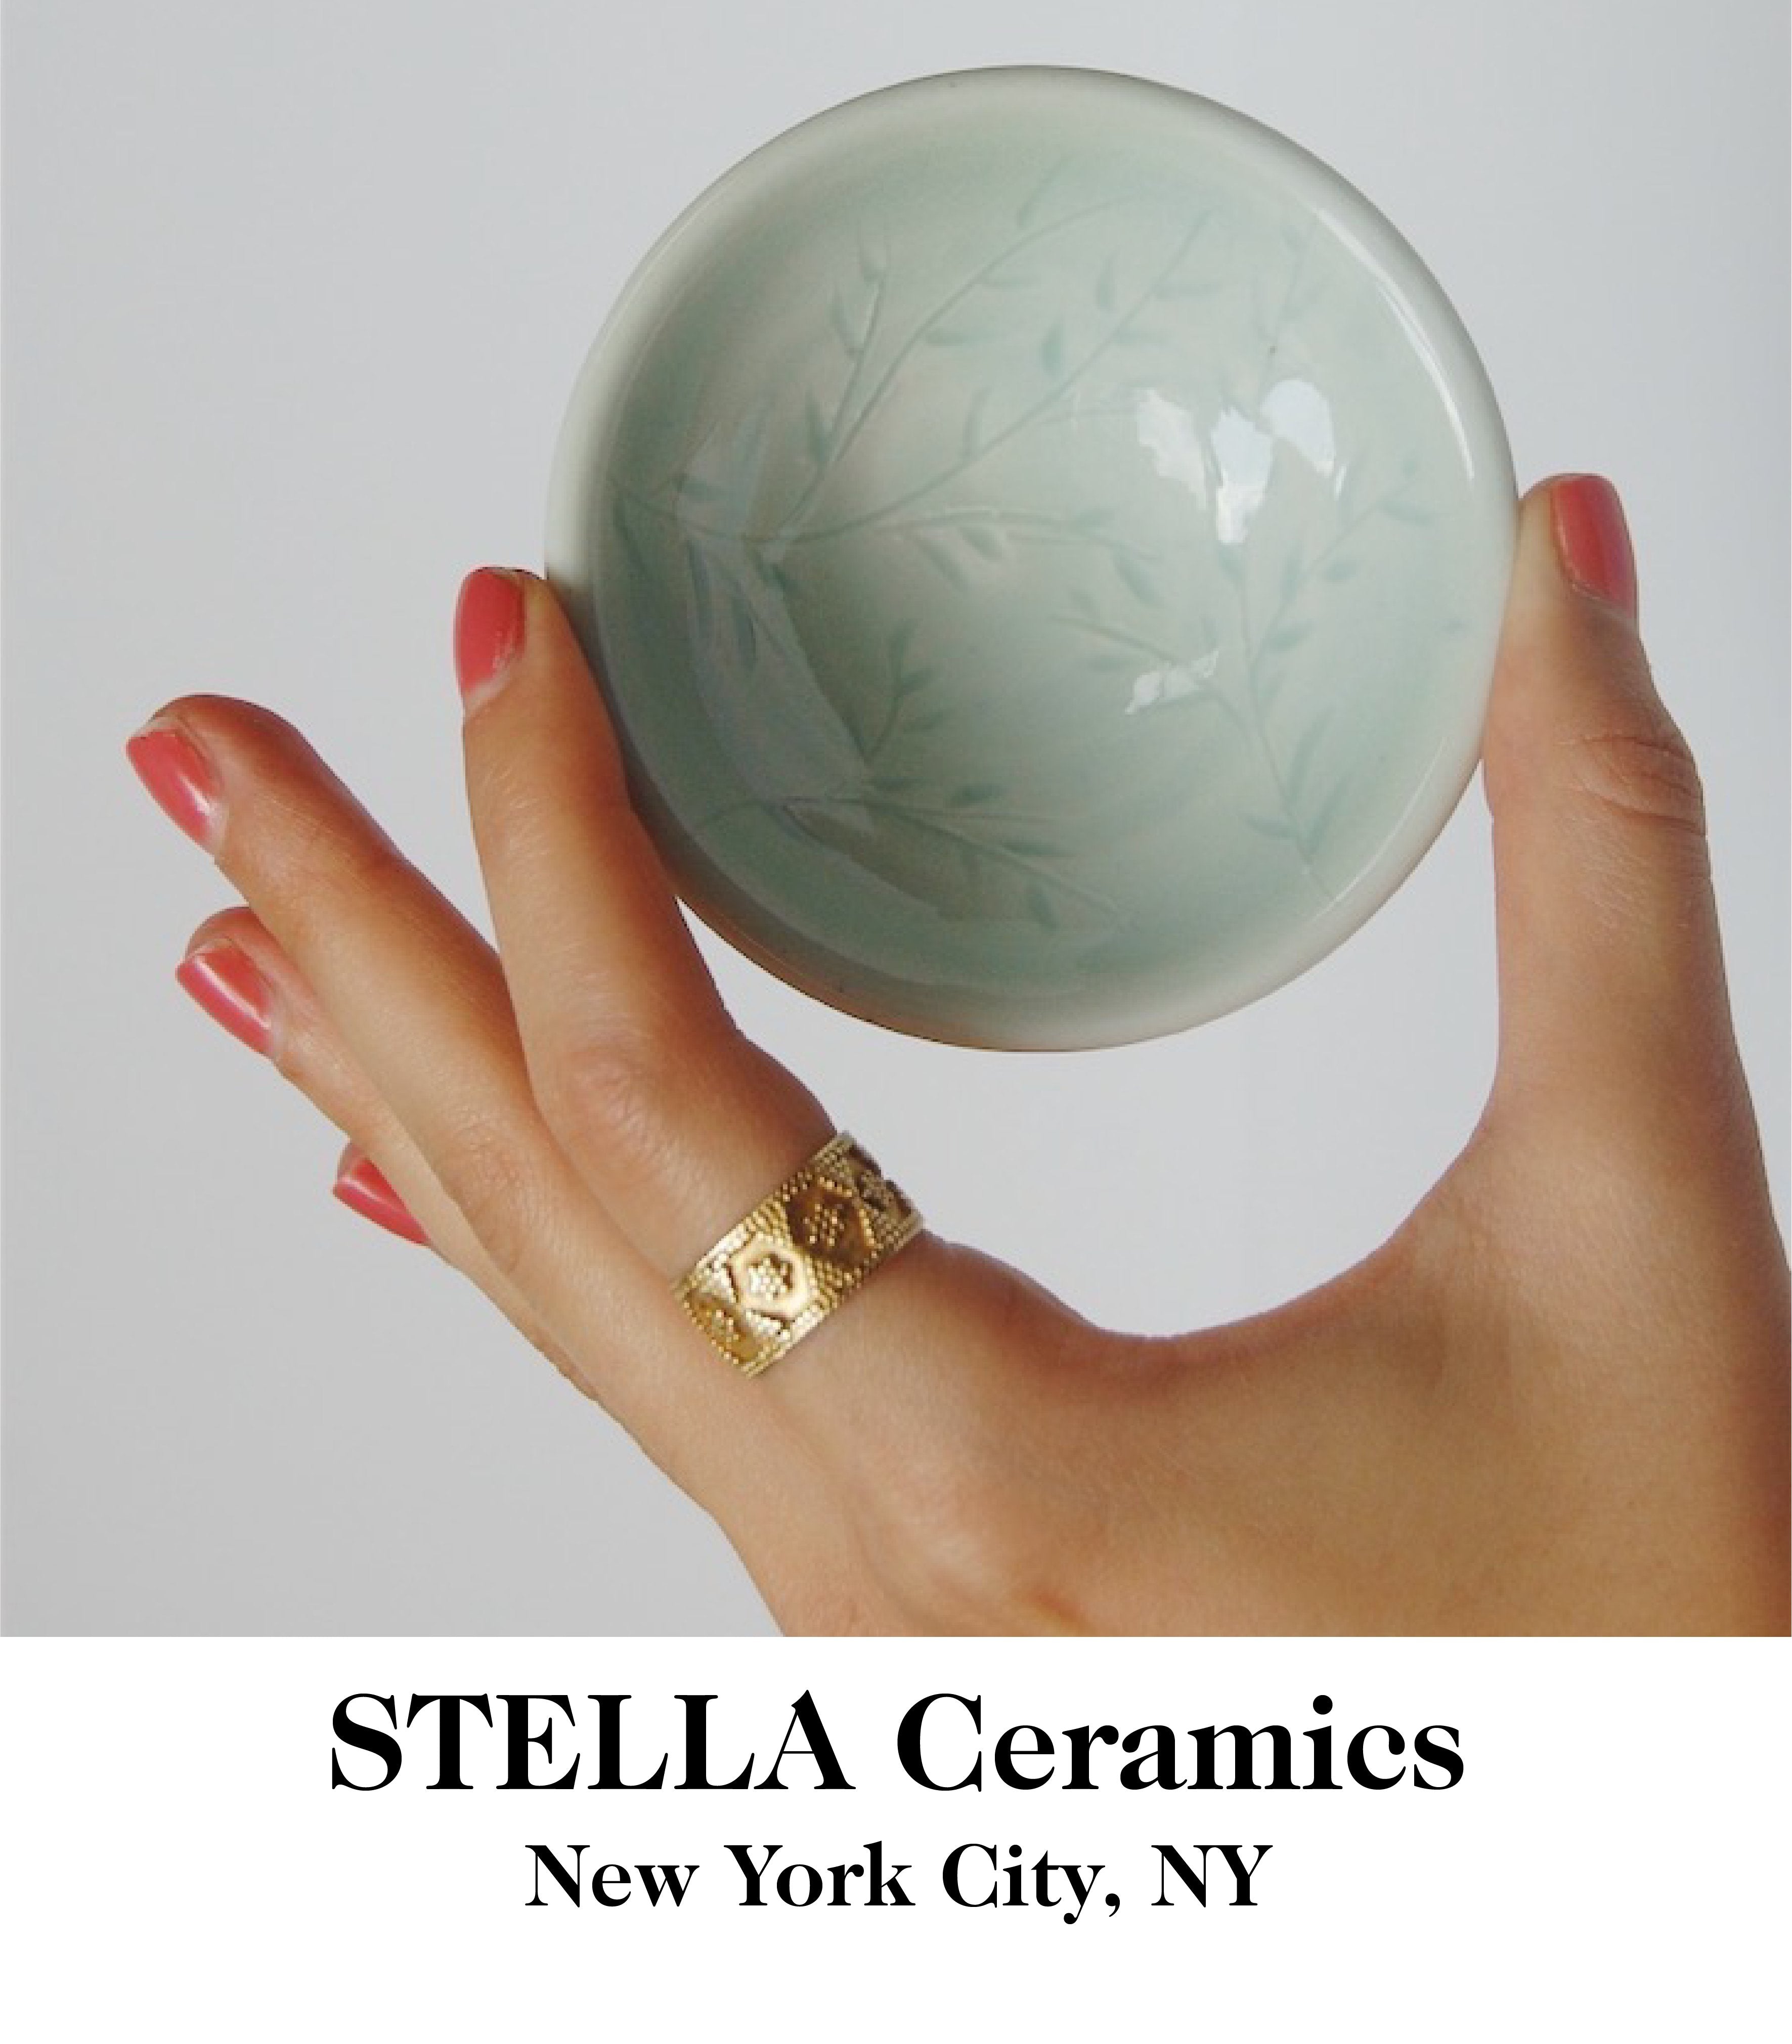 STELLA Ceramics